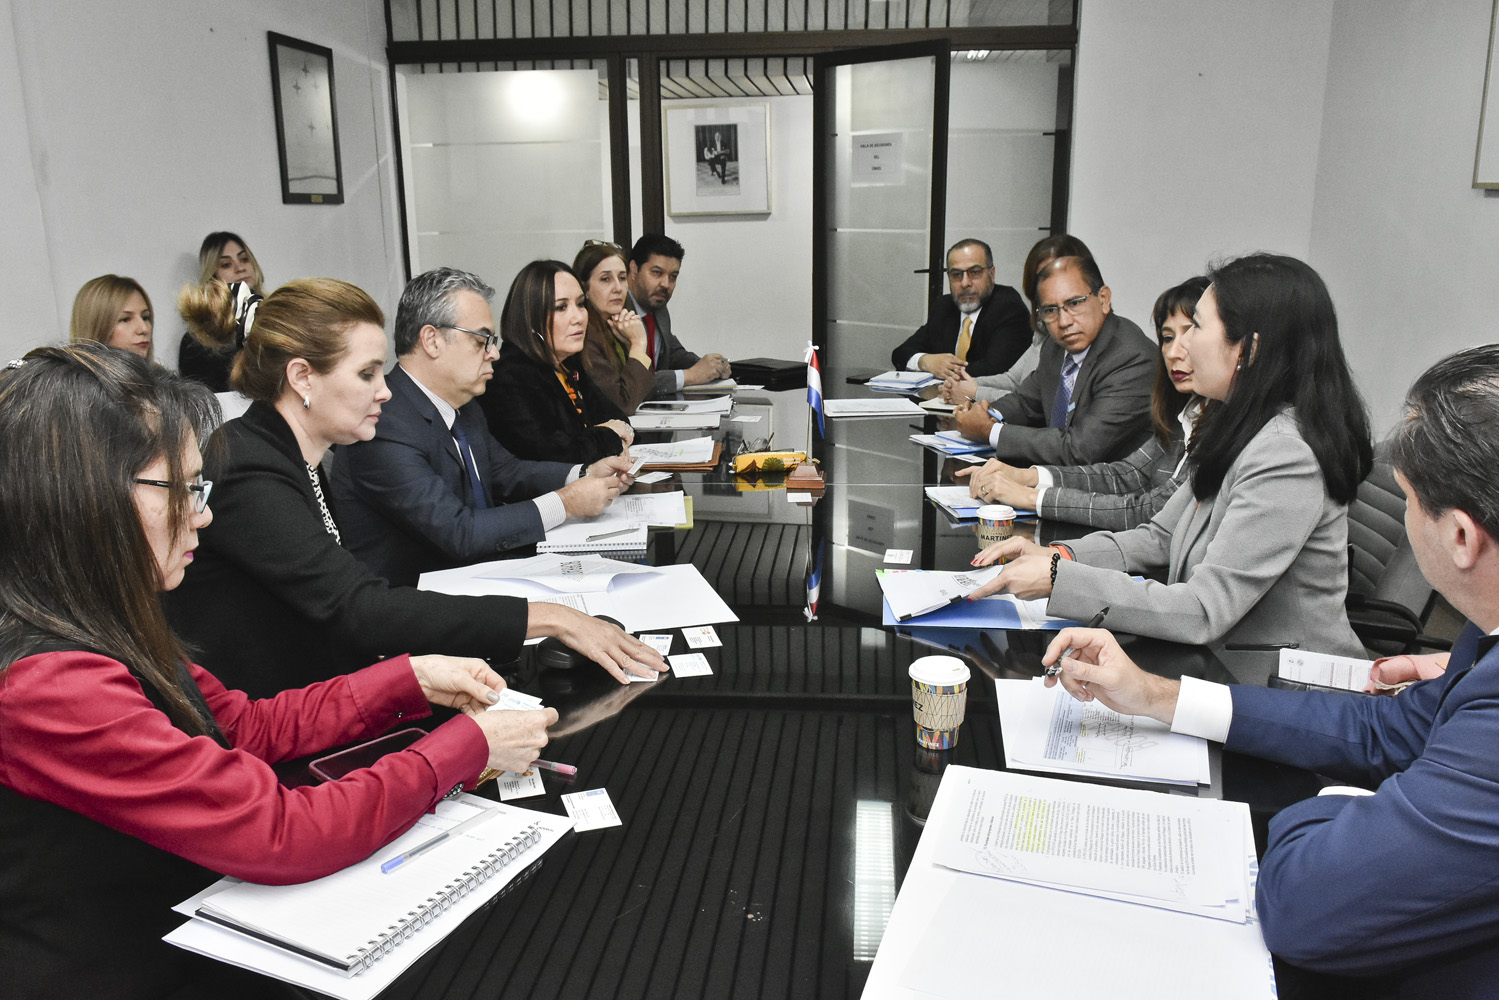 Efectuaron un repaso de objetivos estratégicos de la cooperación de la ONU en Paraguay para los próximos años